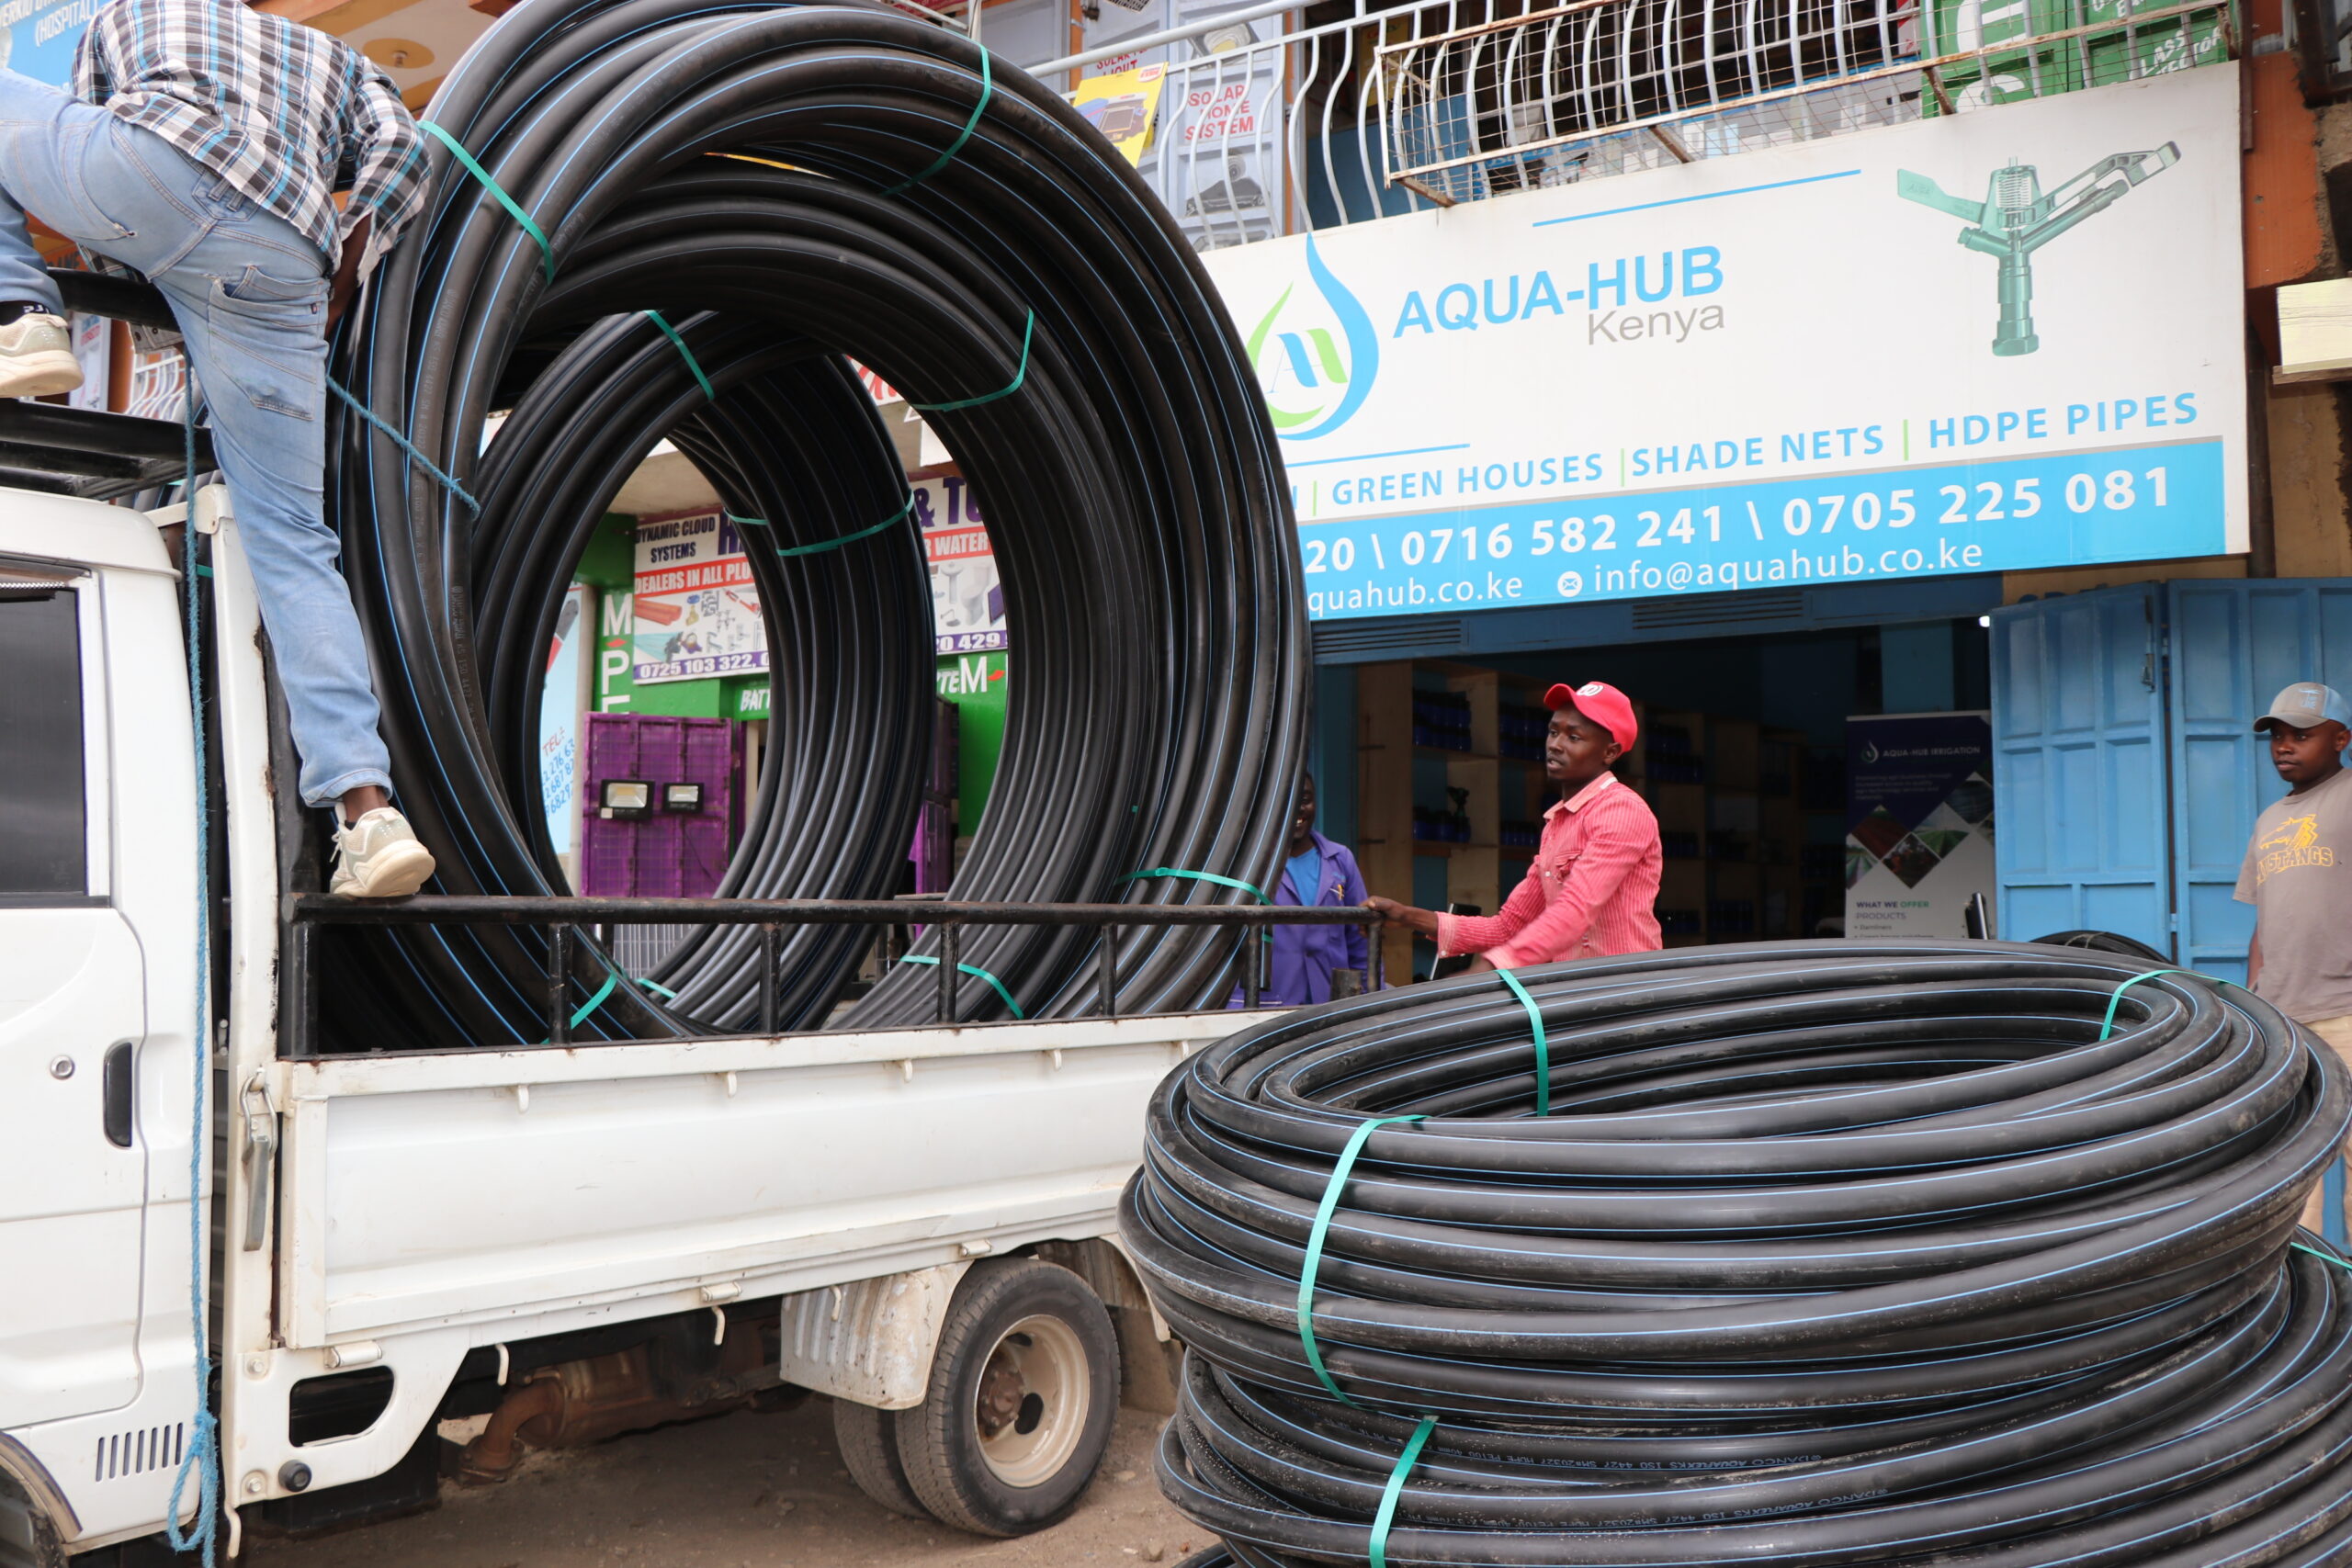 HDPE pipes by Aqua hub